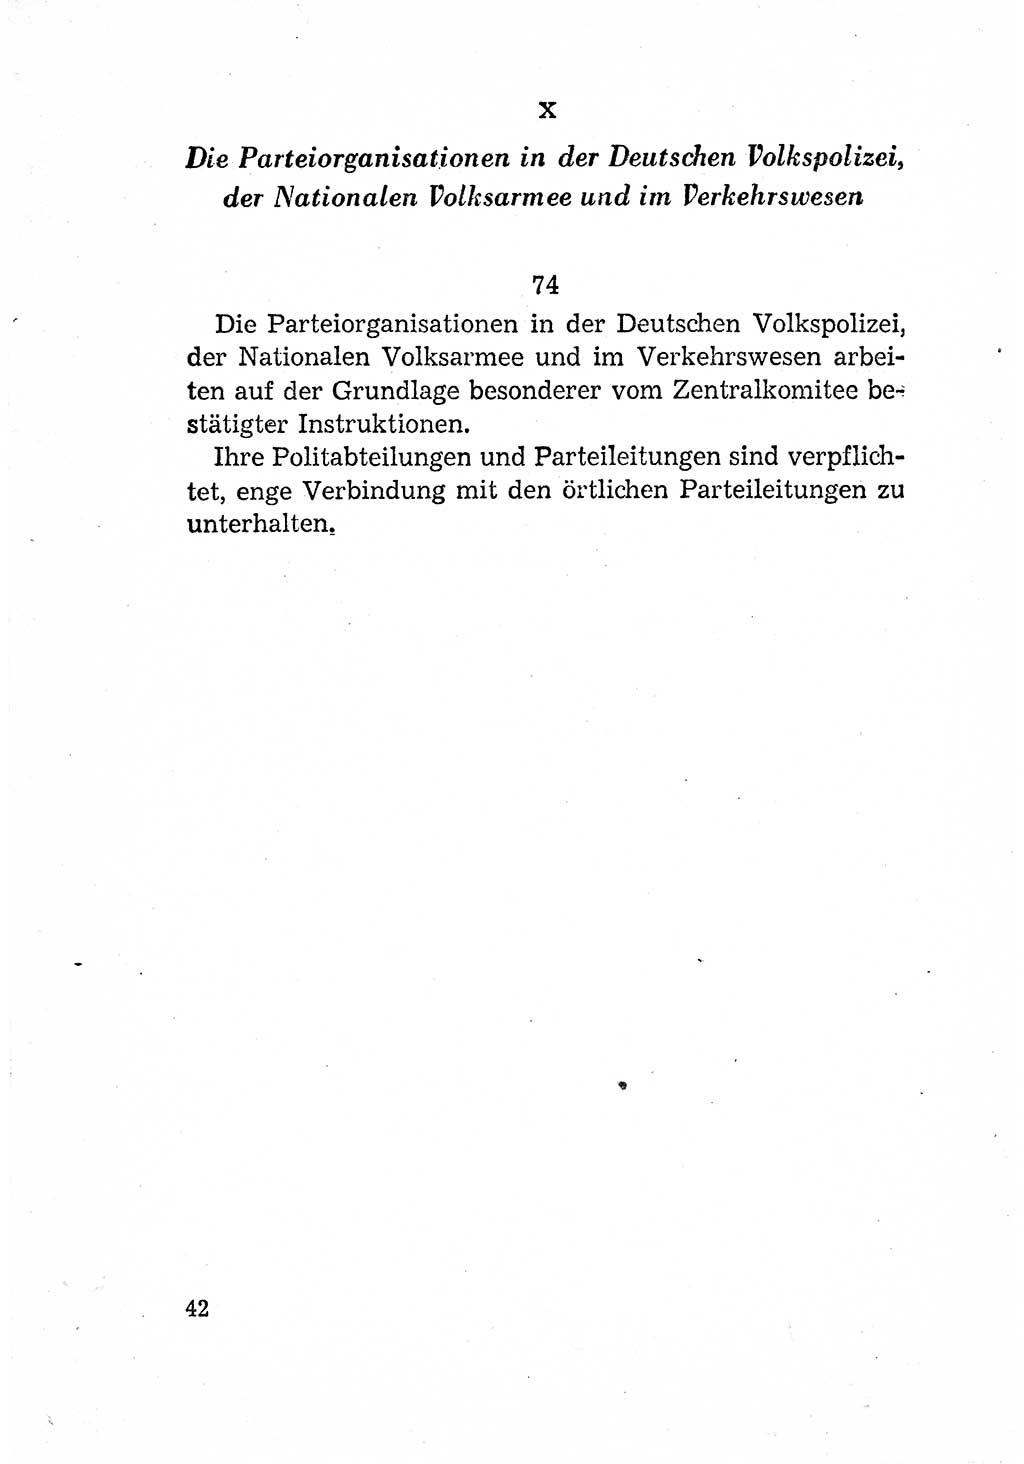 Statut der Sozialistischen Einheitspartei Deutschlands (SED) [Deutsche Demokratische Republik (DDR)] 1958, Seite 42 (St. SED DDR 1958, S. 42)